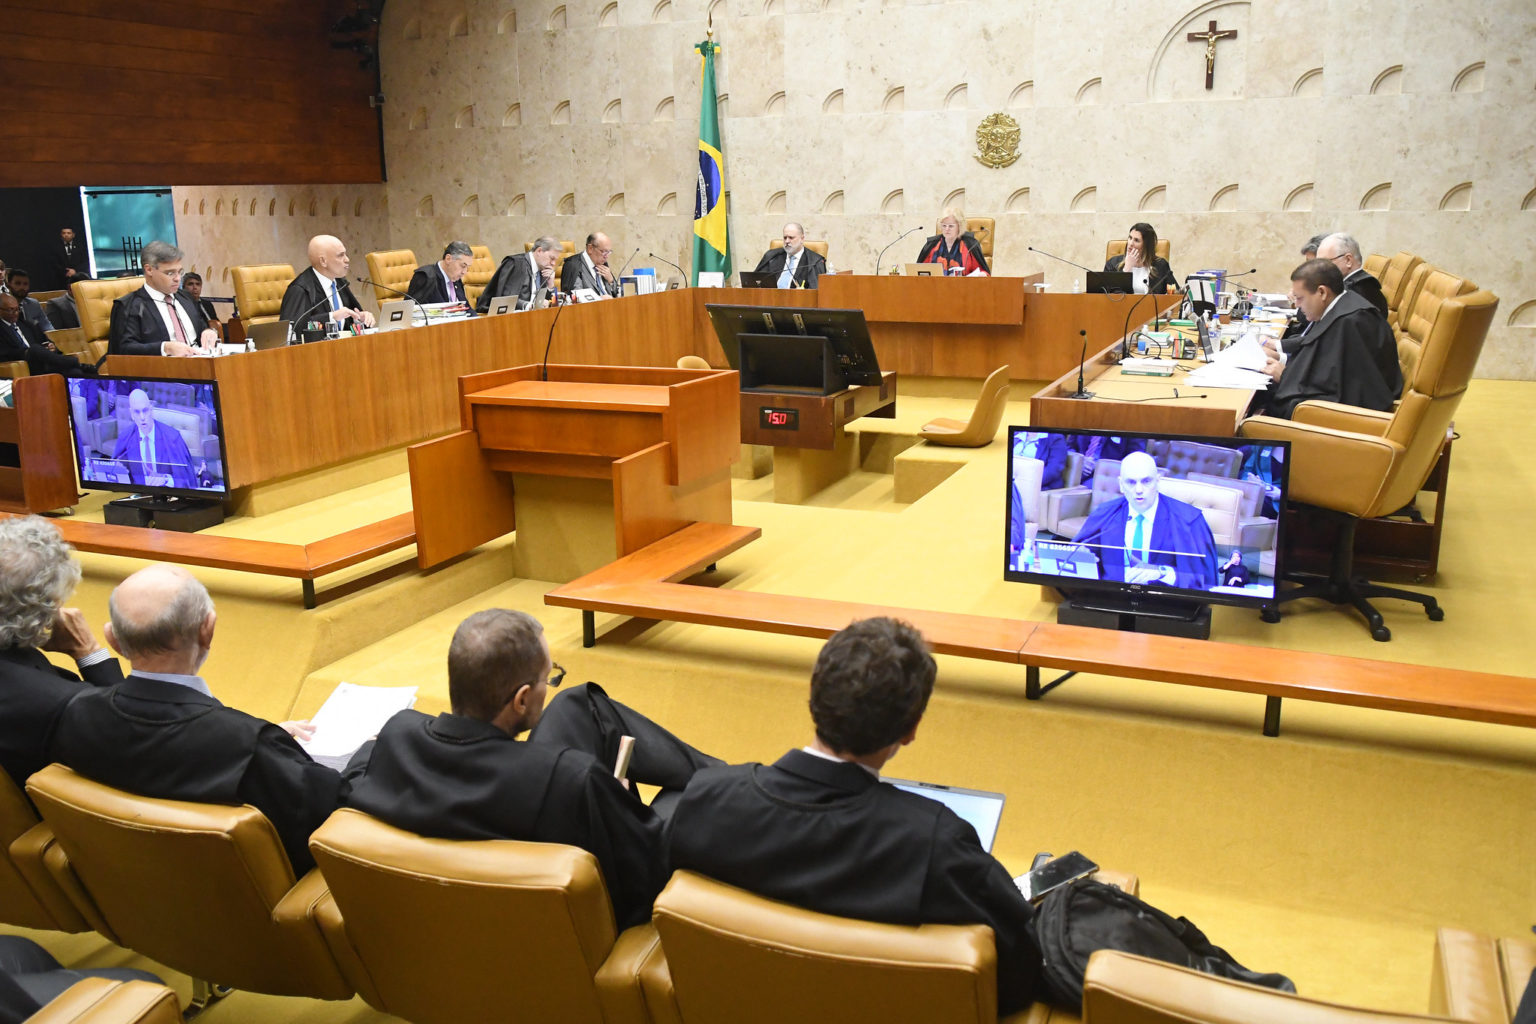 Quatro ministros do STF votam a favor da descriminalização do porte de maconha